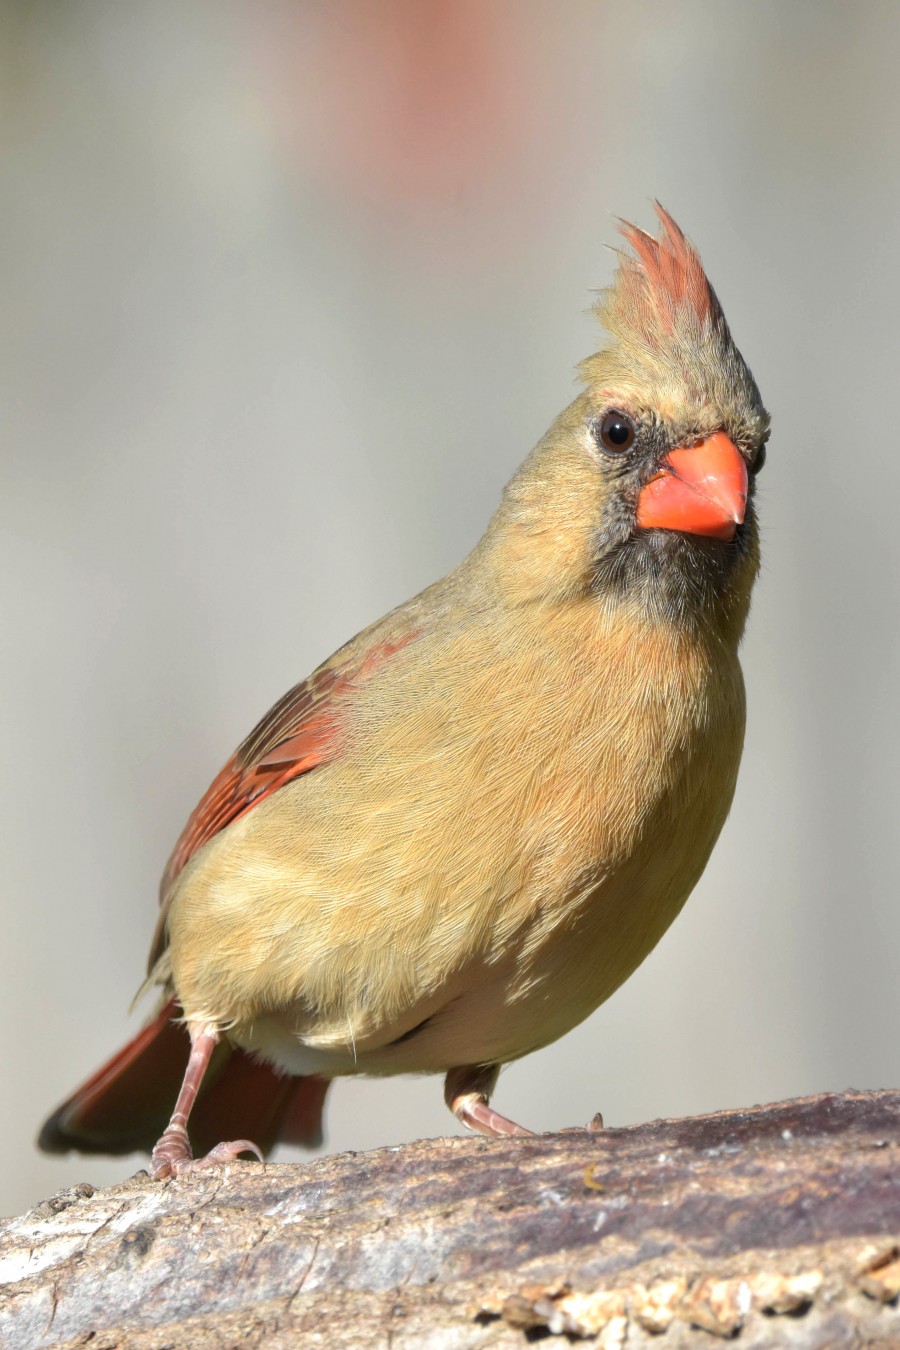 Famale Cardinal on a log